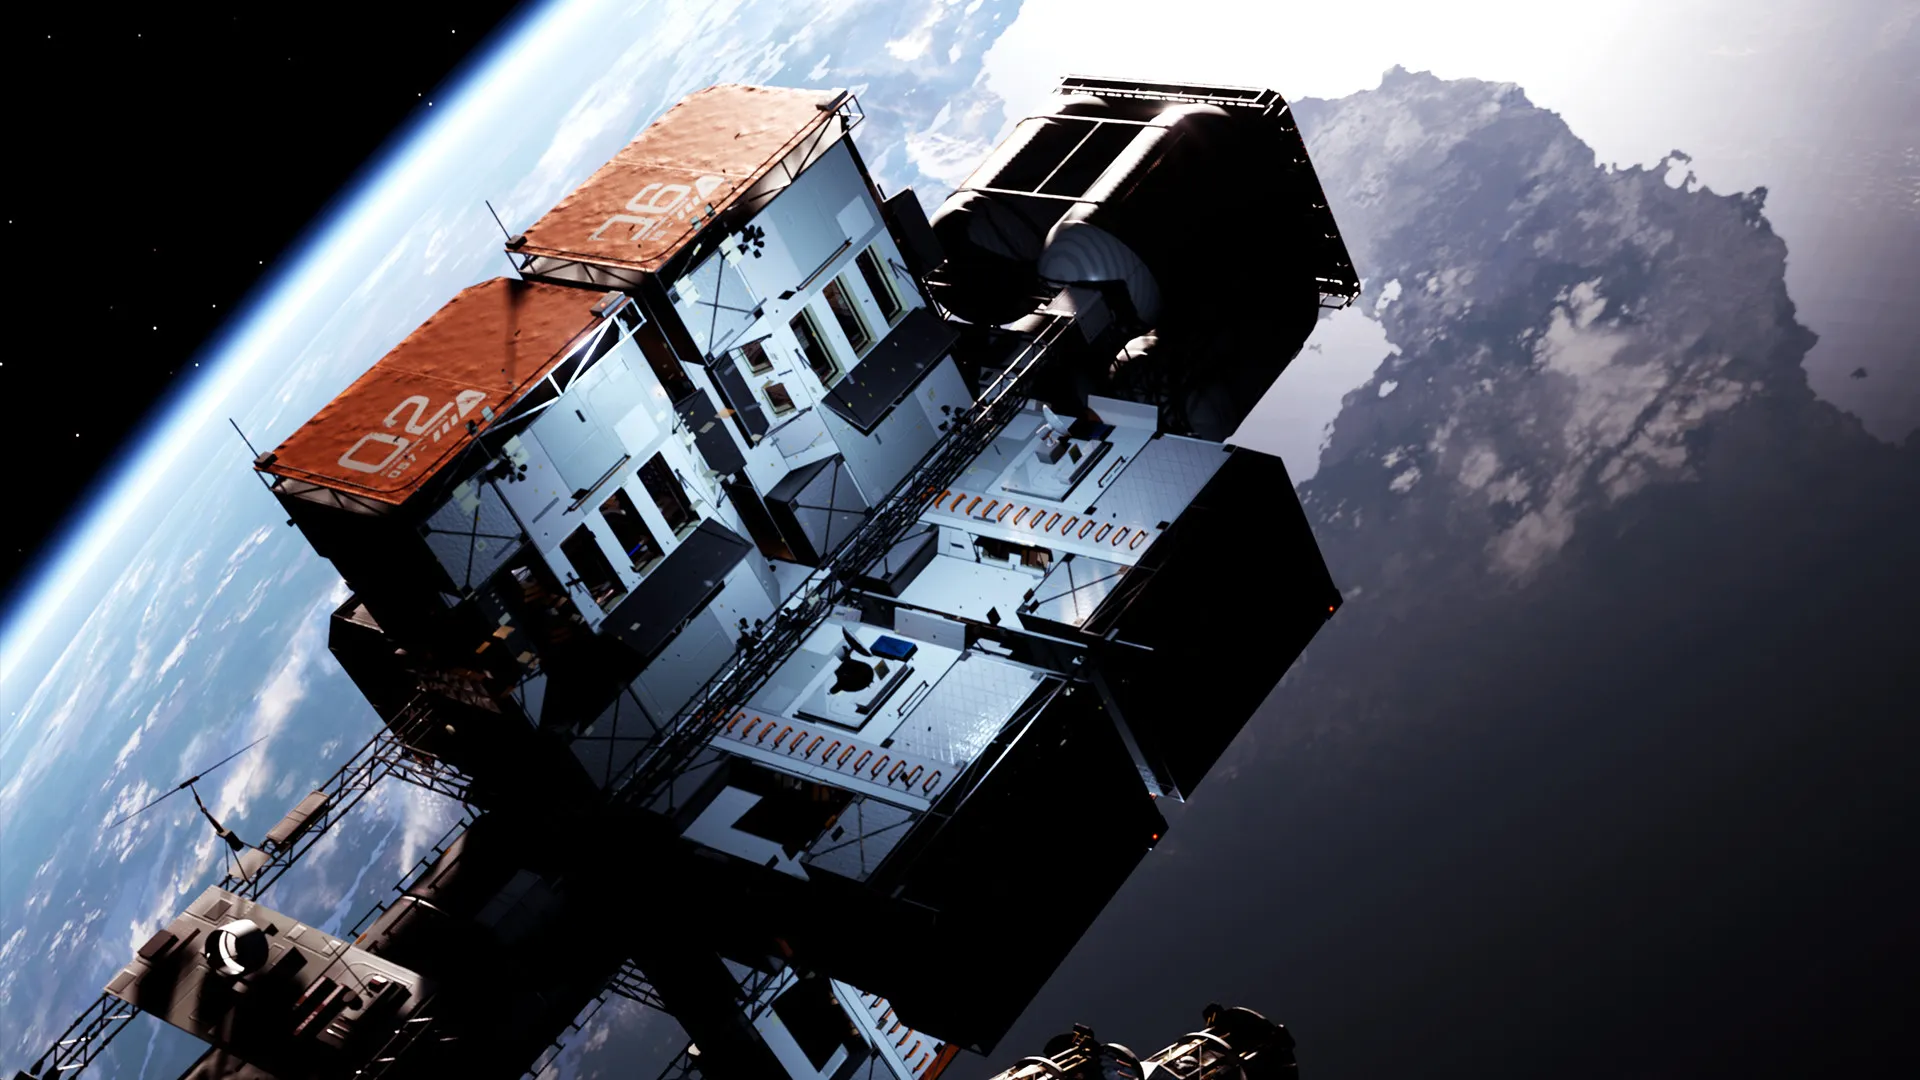 DayZ creator Dean Hall delays space survival game Icarus to November